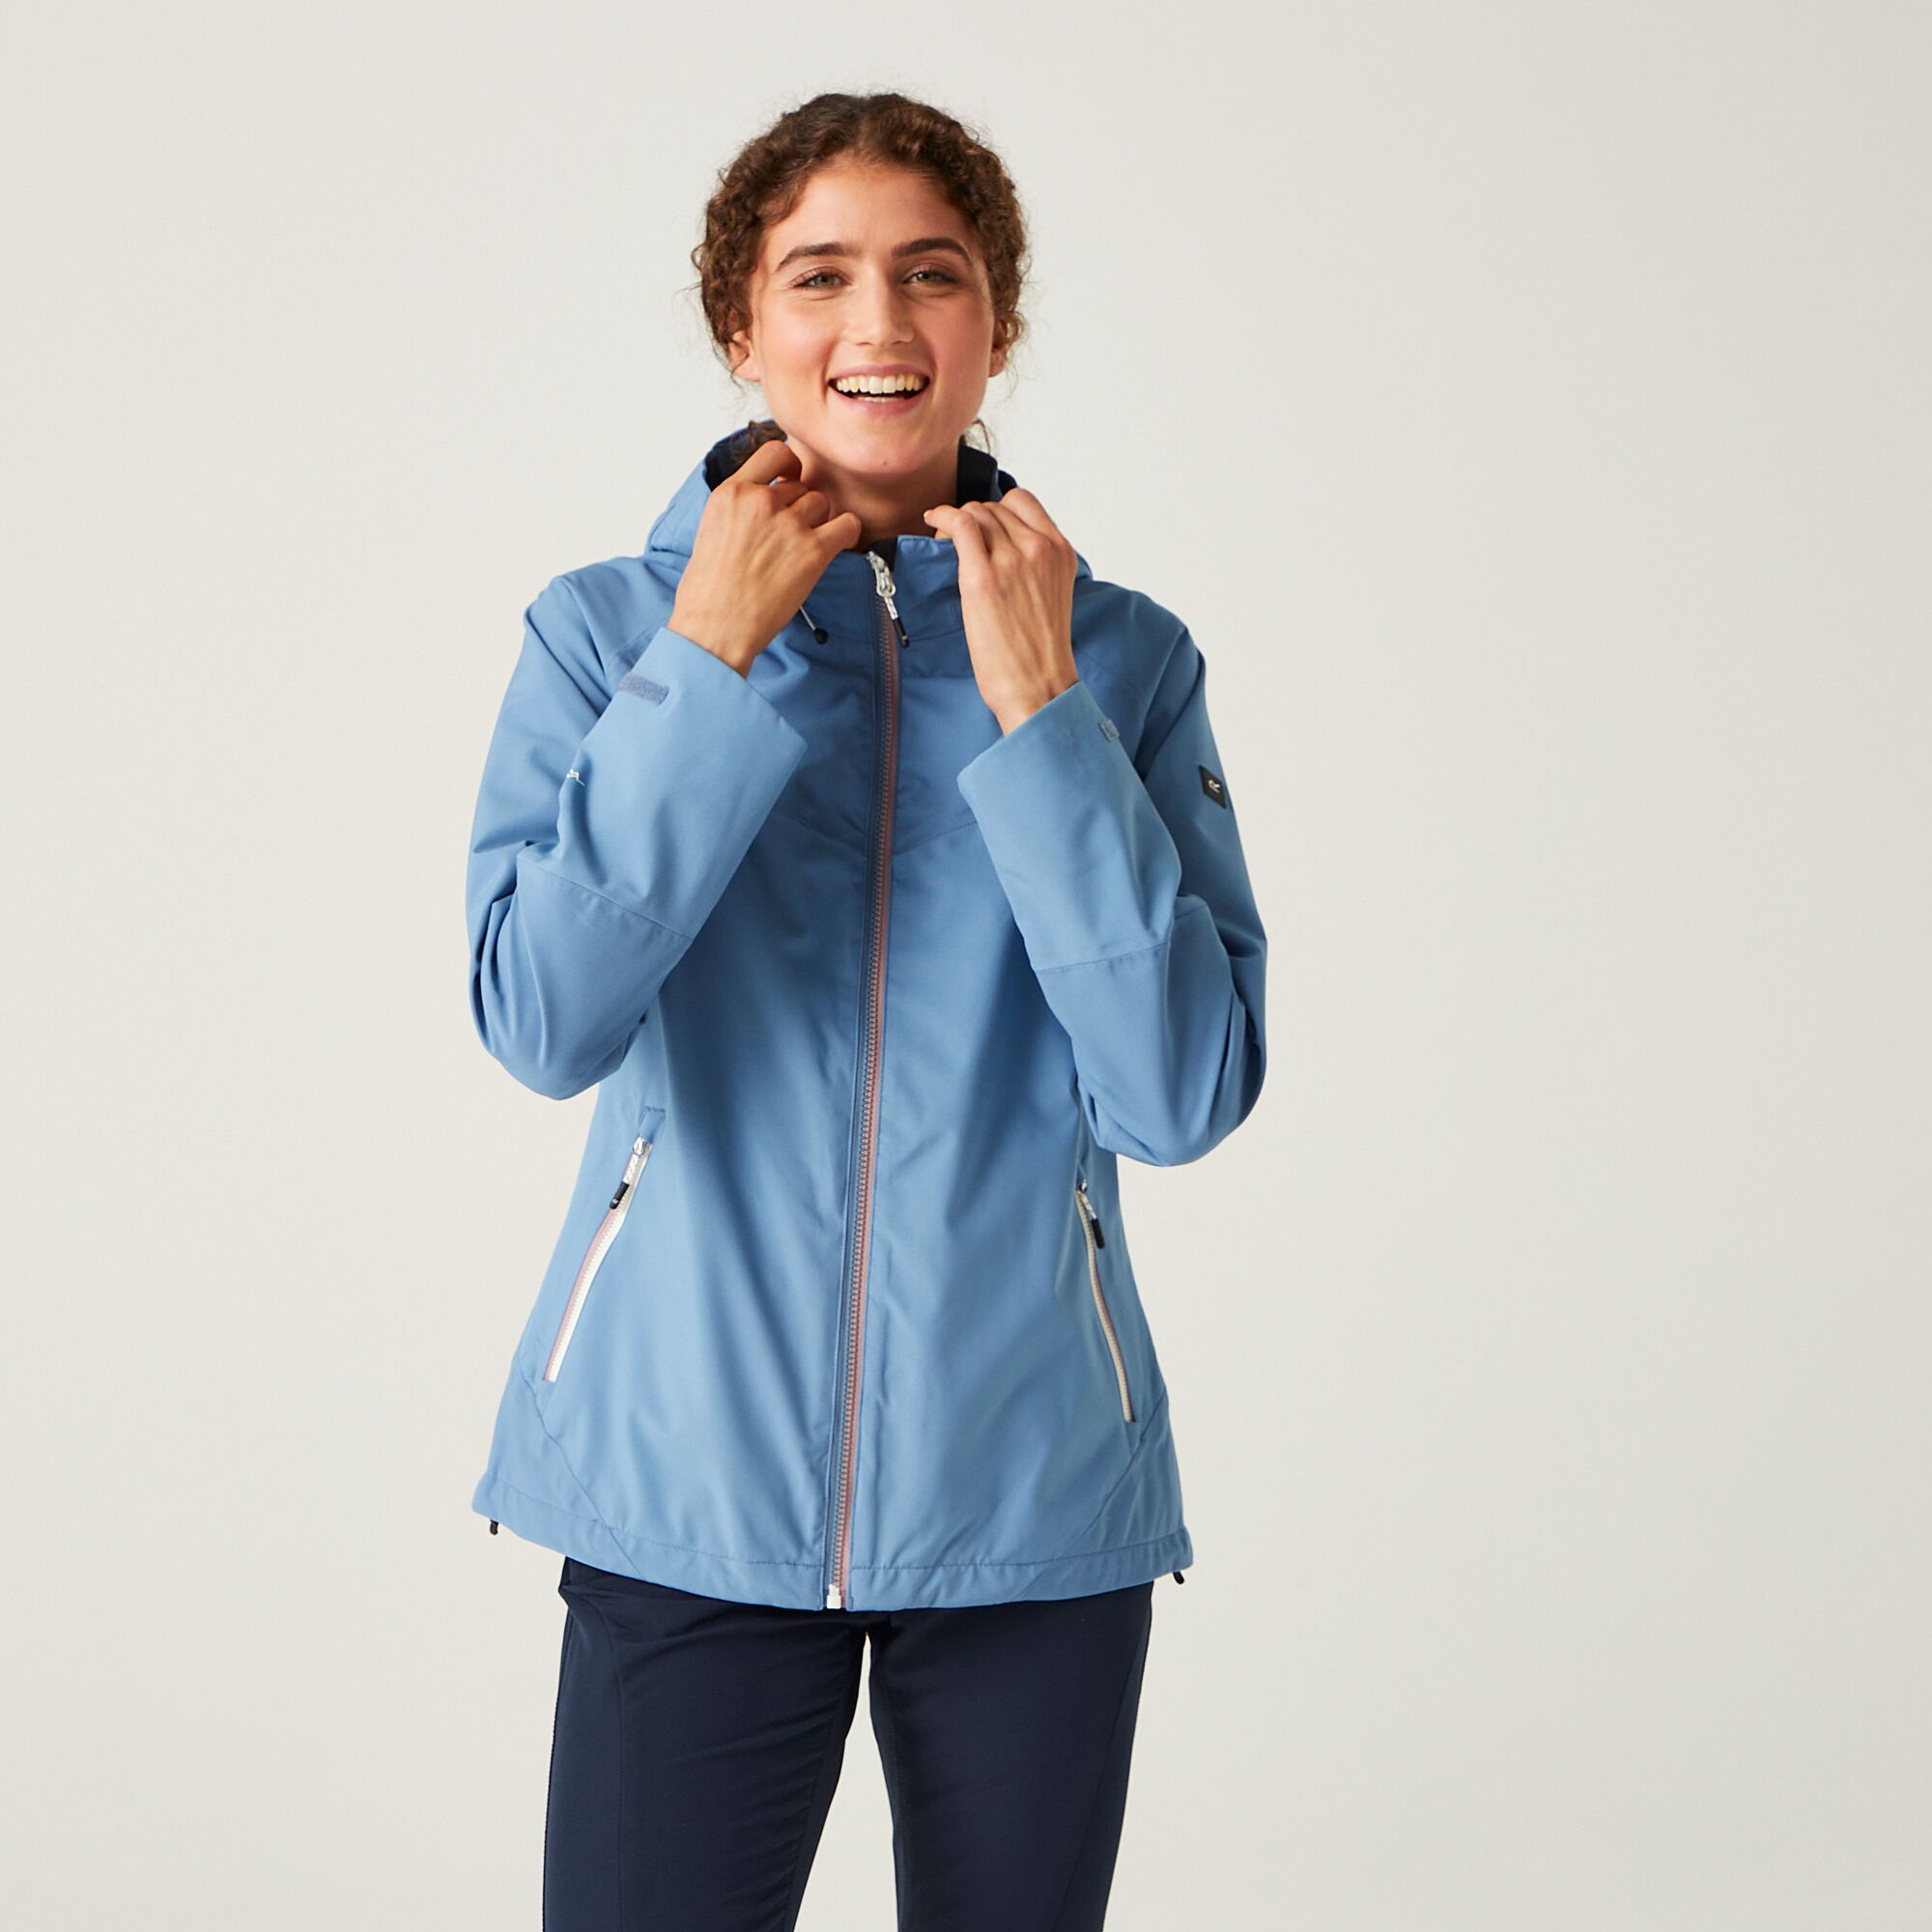 Regatta Bosfield II Wasserdichte Jacke für Damen Blau, Größe: 46